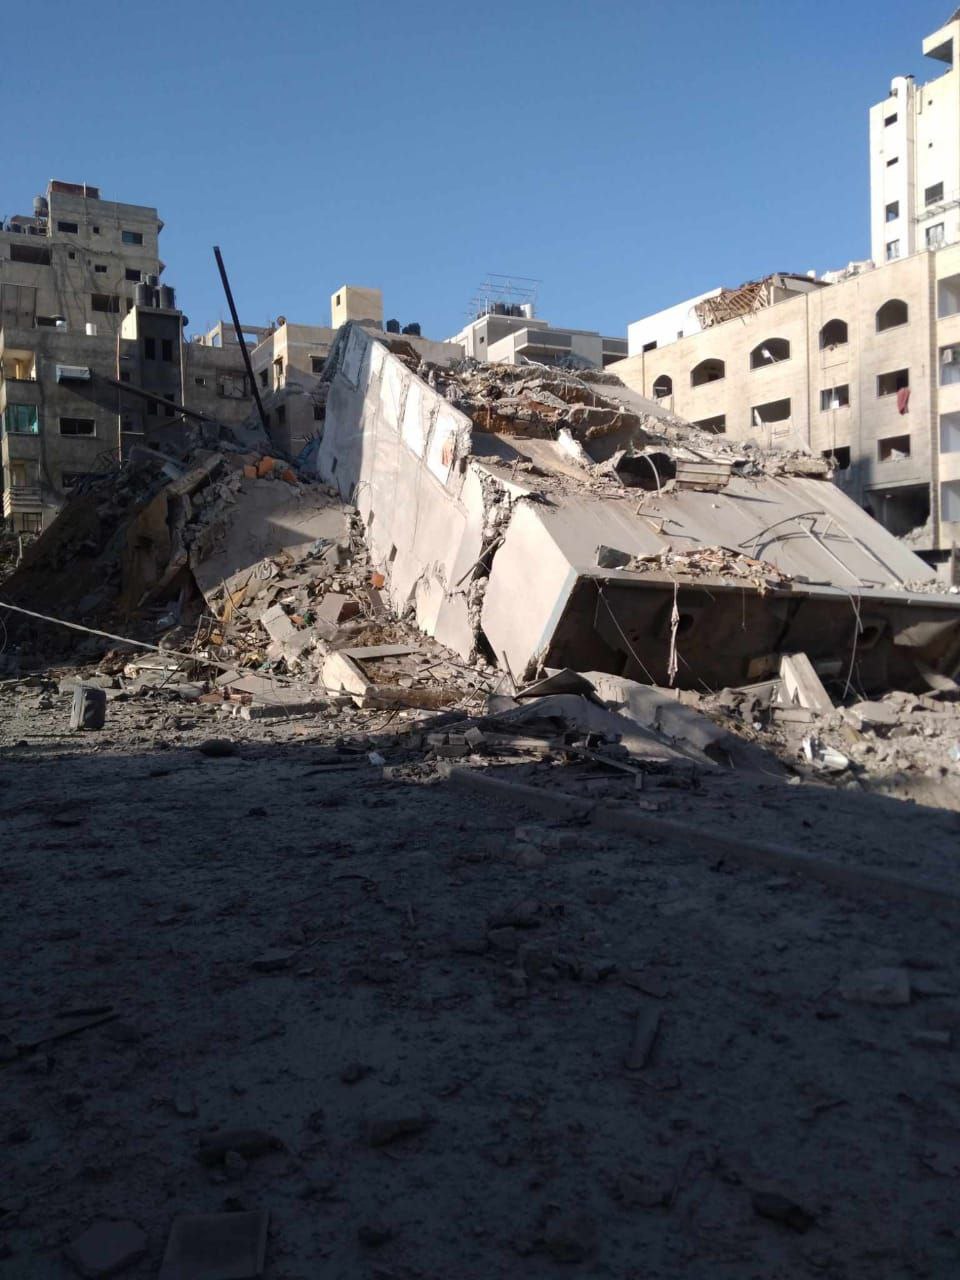 غارات القصف العنيف الذي تعرضت له غزة ليلة أمس دمرت برج الأندلس في محيط منطقة ميناء غزة